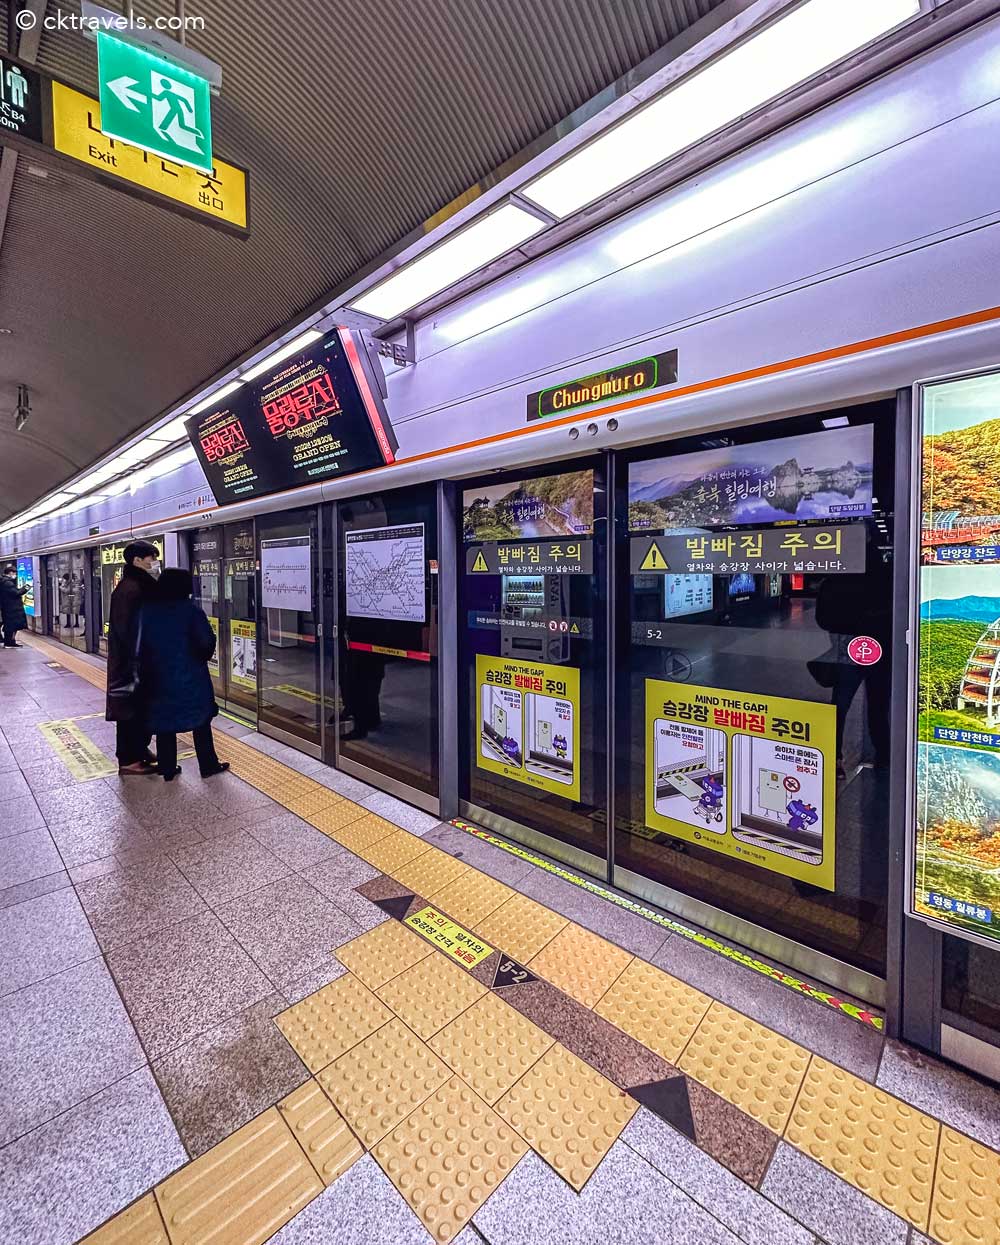 seoul chungmuro subway station platform